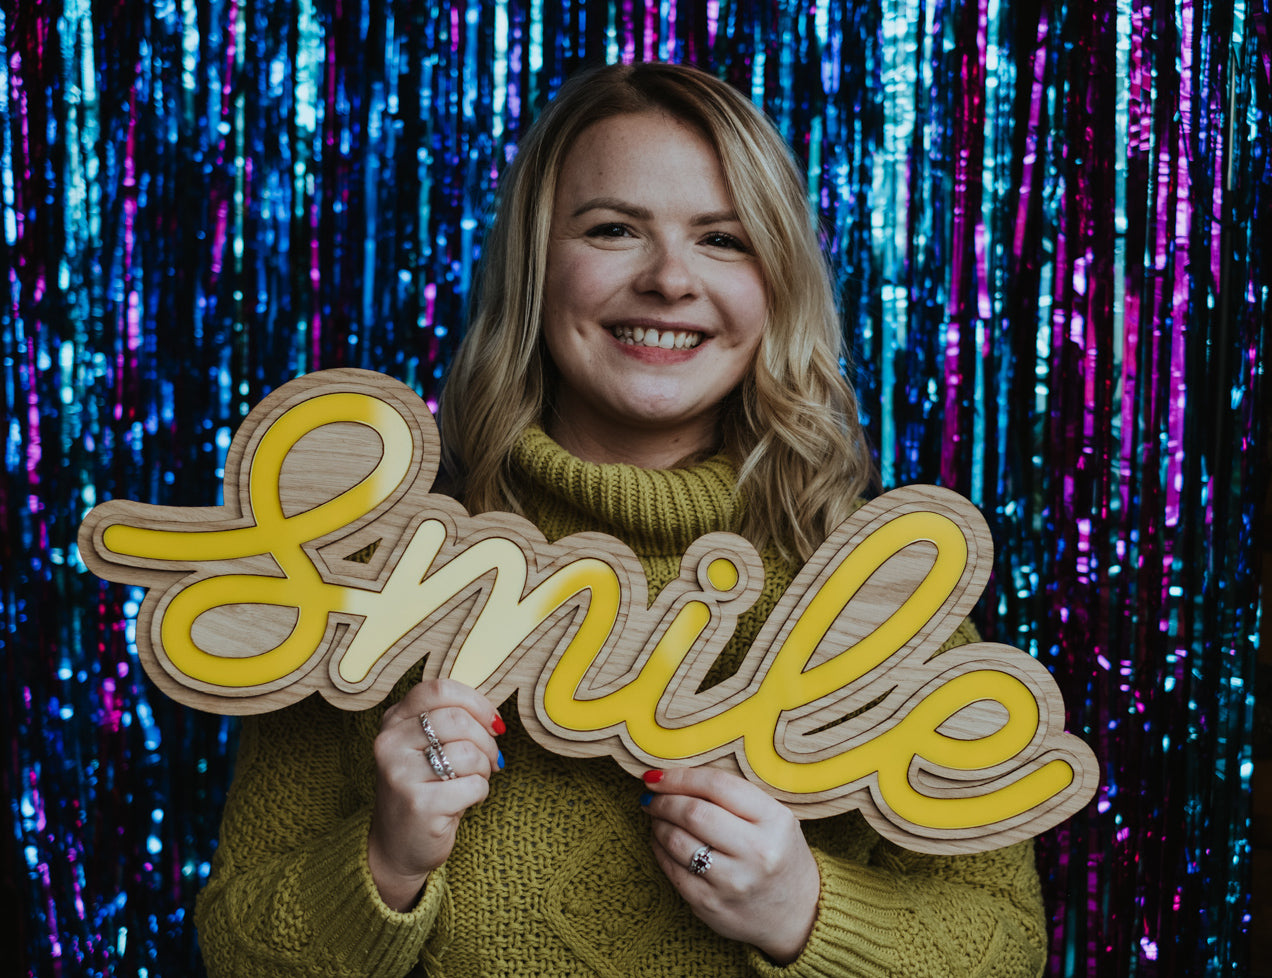 UK Based Designer, Sam holding a Wooden Smile Sign - Meet The Maker Image